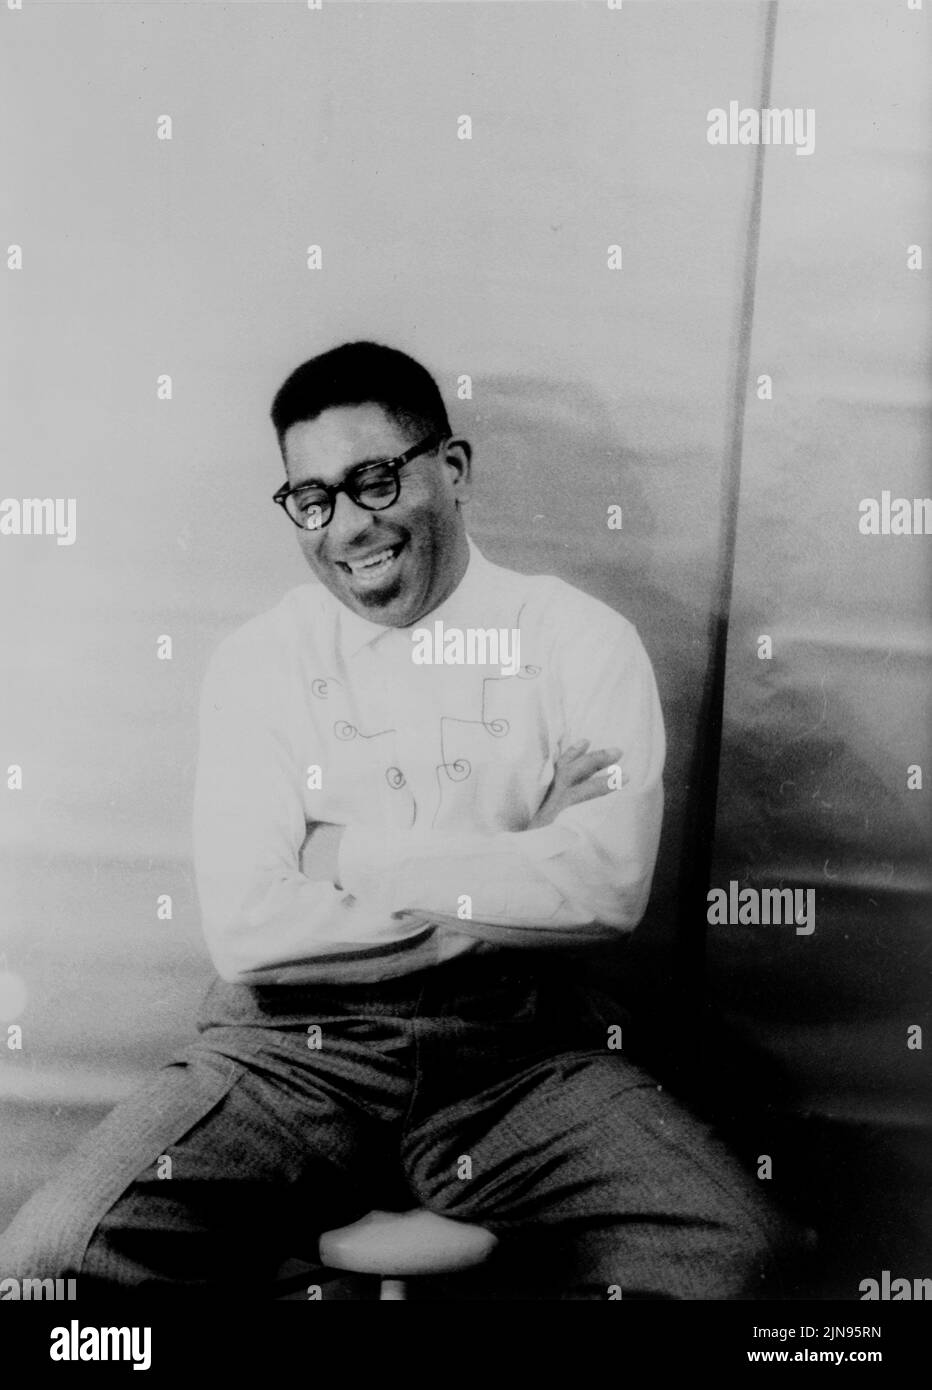 Ee.Uu. -- 02 dic 1955 -- retrato del músico de jazz Dizzy Gillespie ( John Birks 1917-1993 ) -- Fotografía de Carl Van Vechten/Atlas Archivo fotográfico Foto de stock